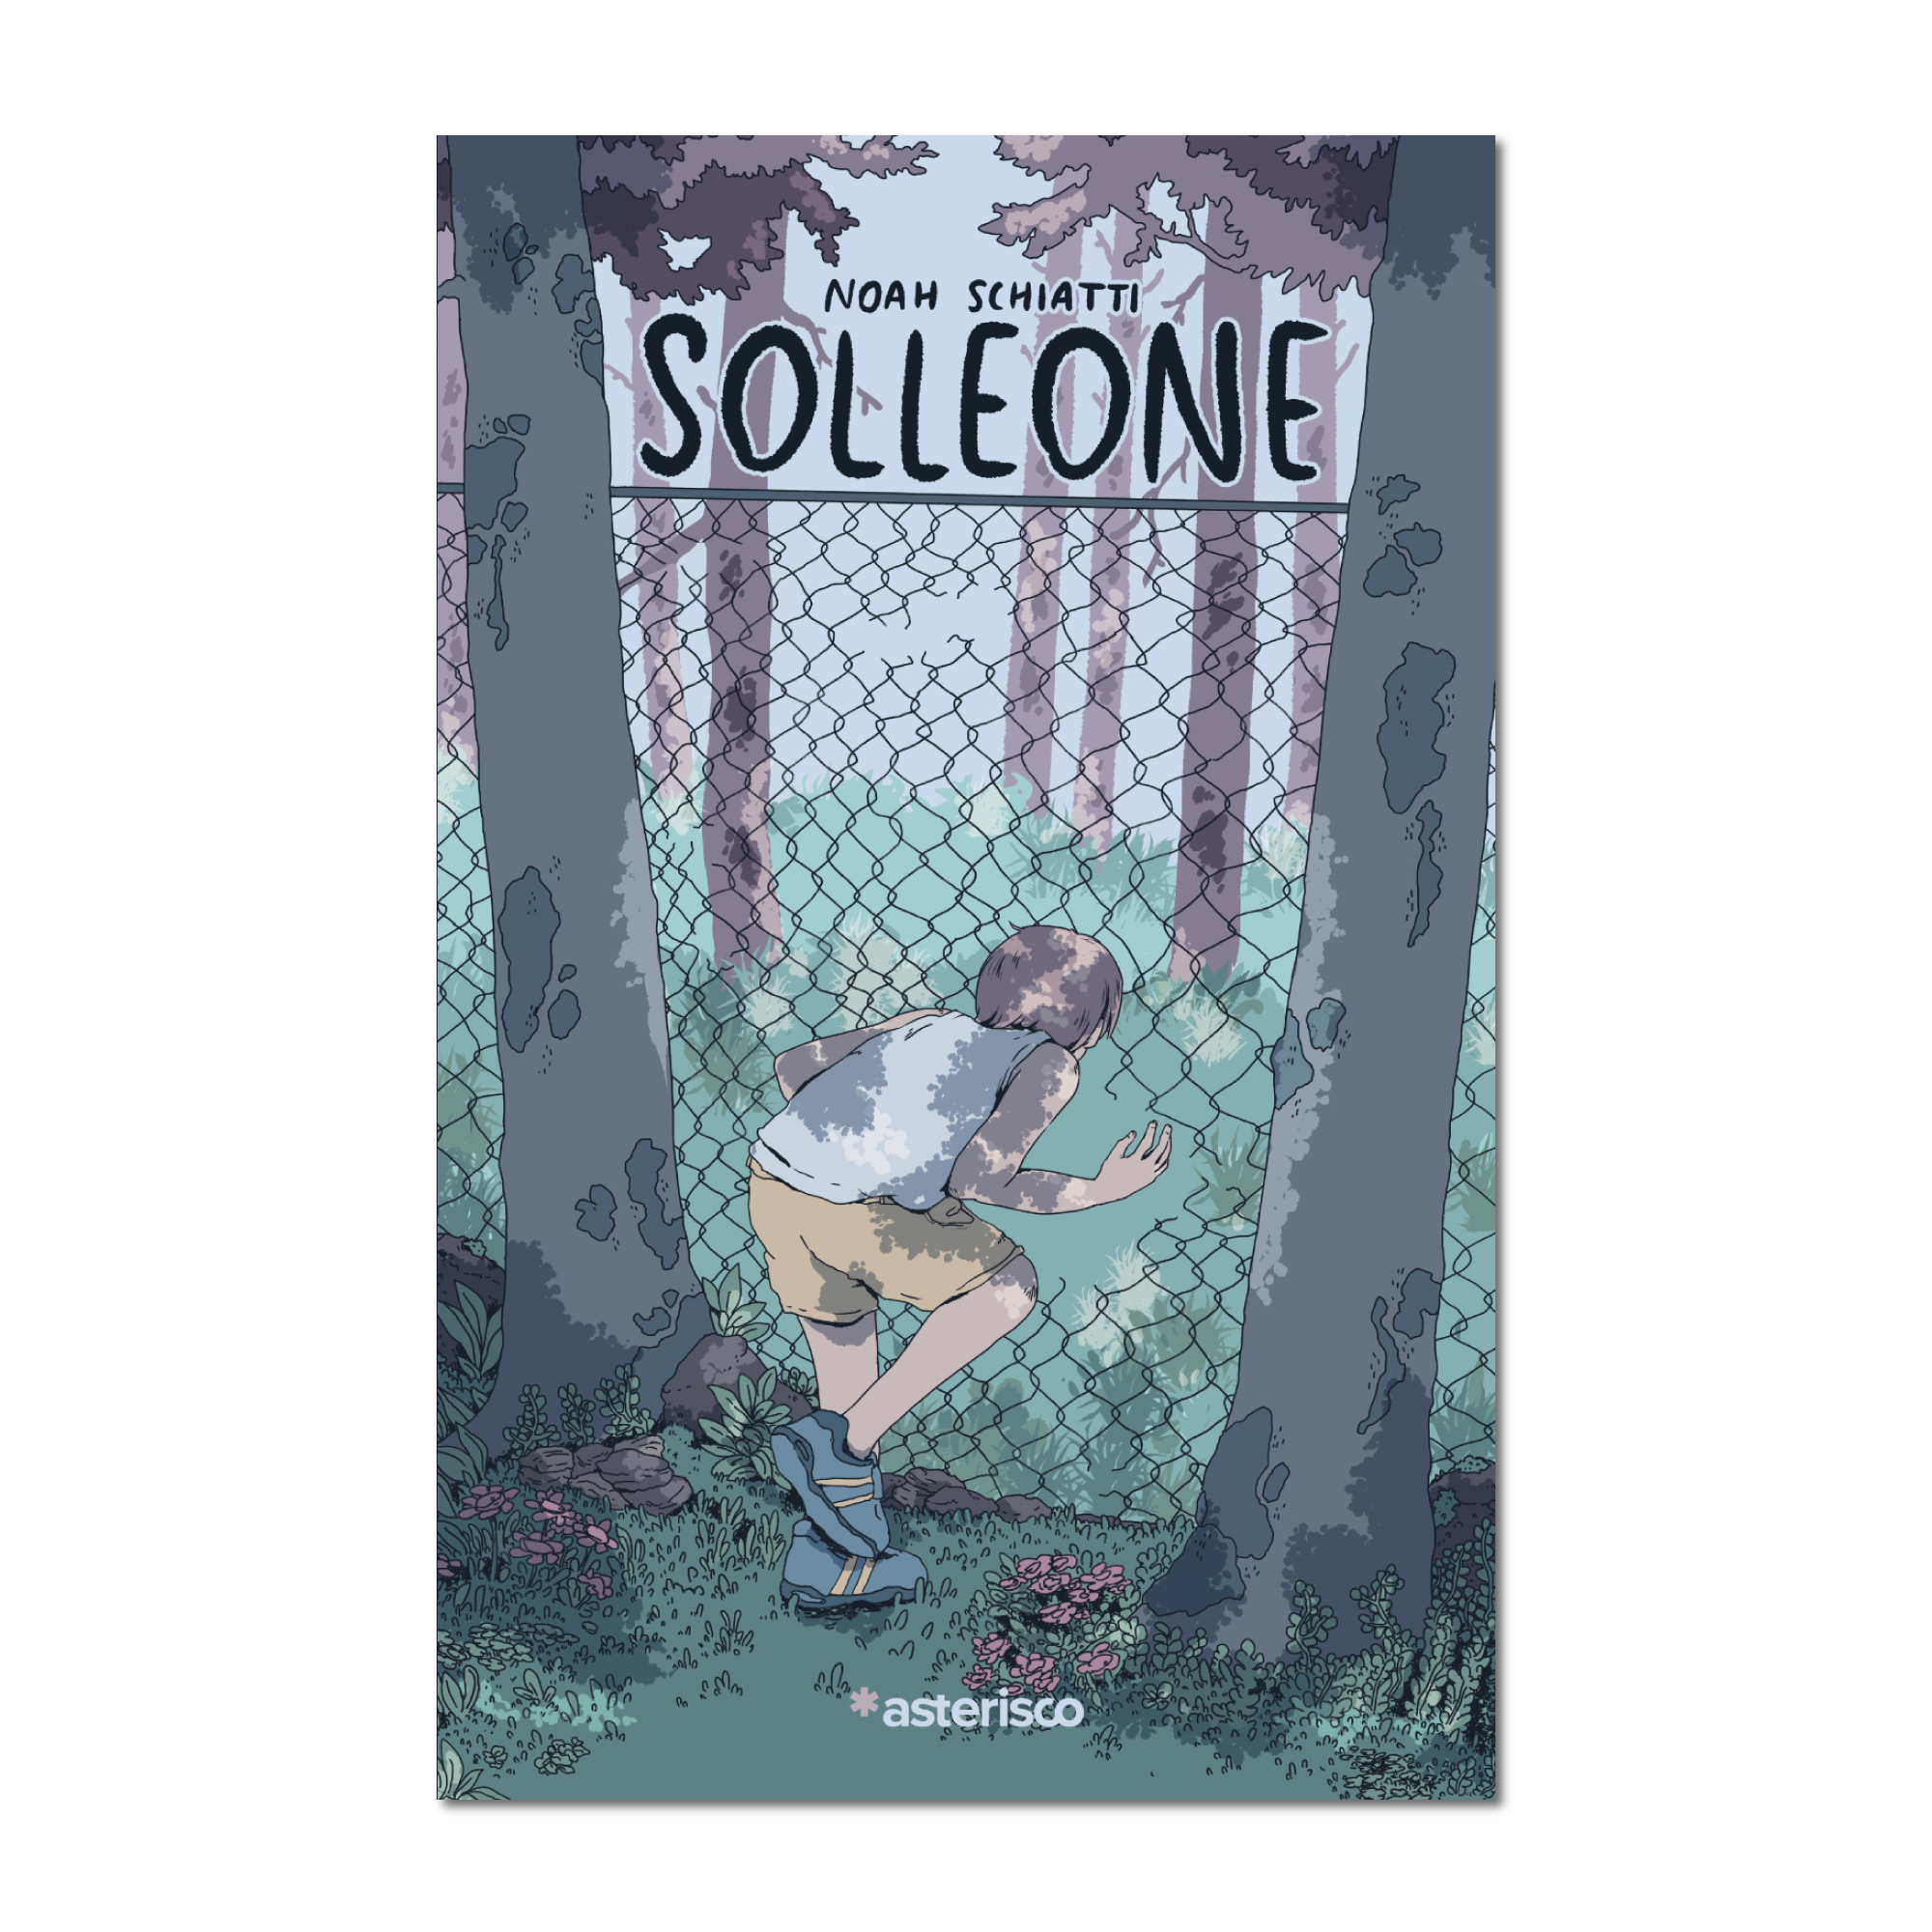 Solleone (GraphicNovel, Asterisco)